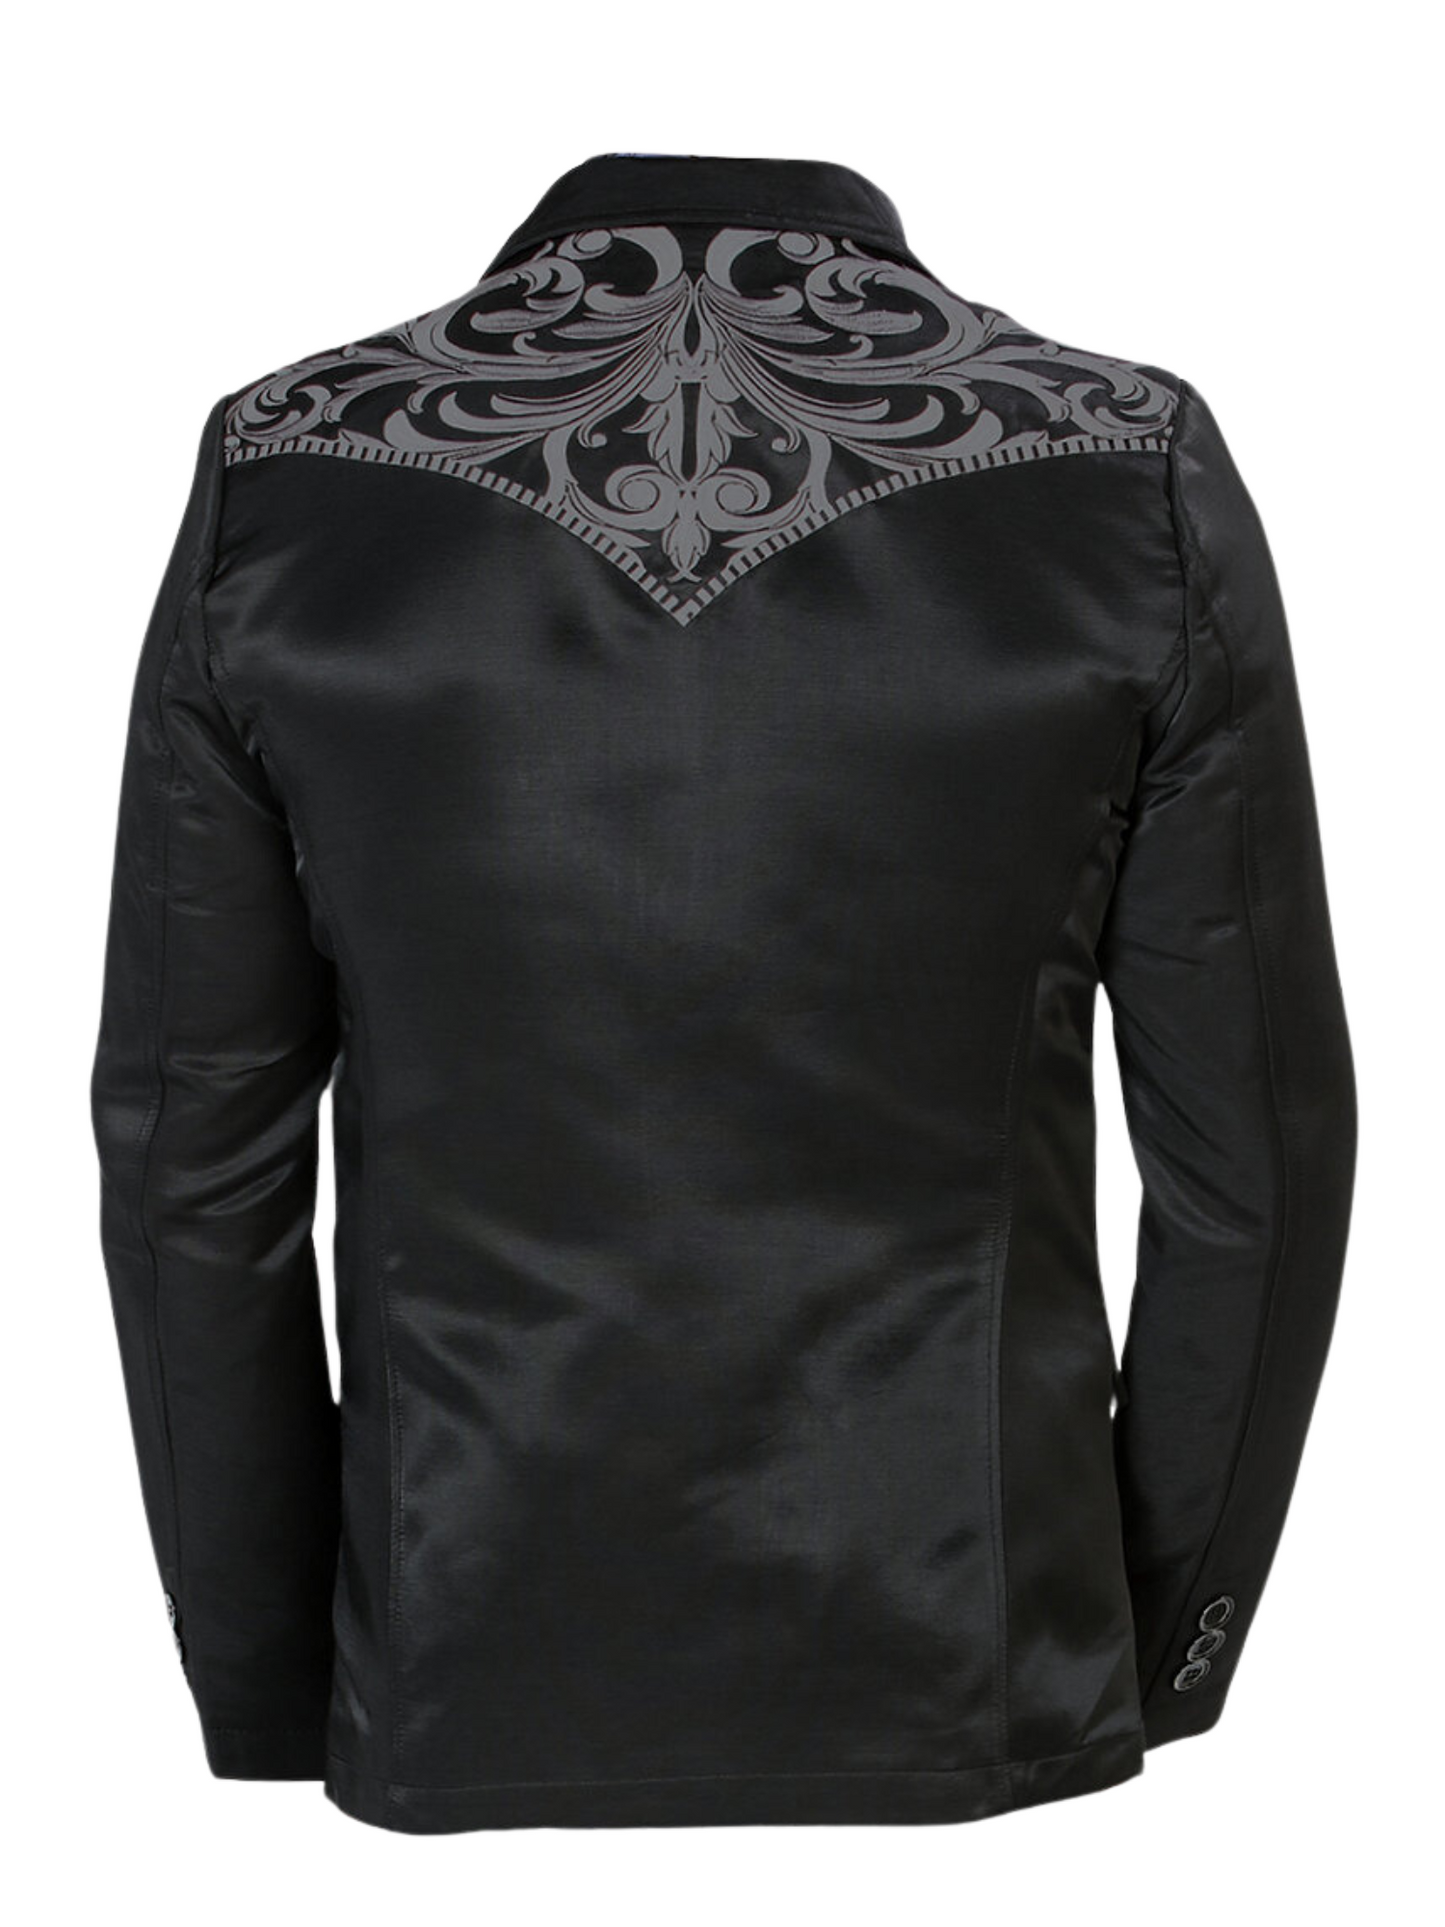 Embroidered Denim Jacket for Men 'Montero' - ID: 2178 Western Blazer Montero